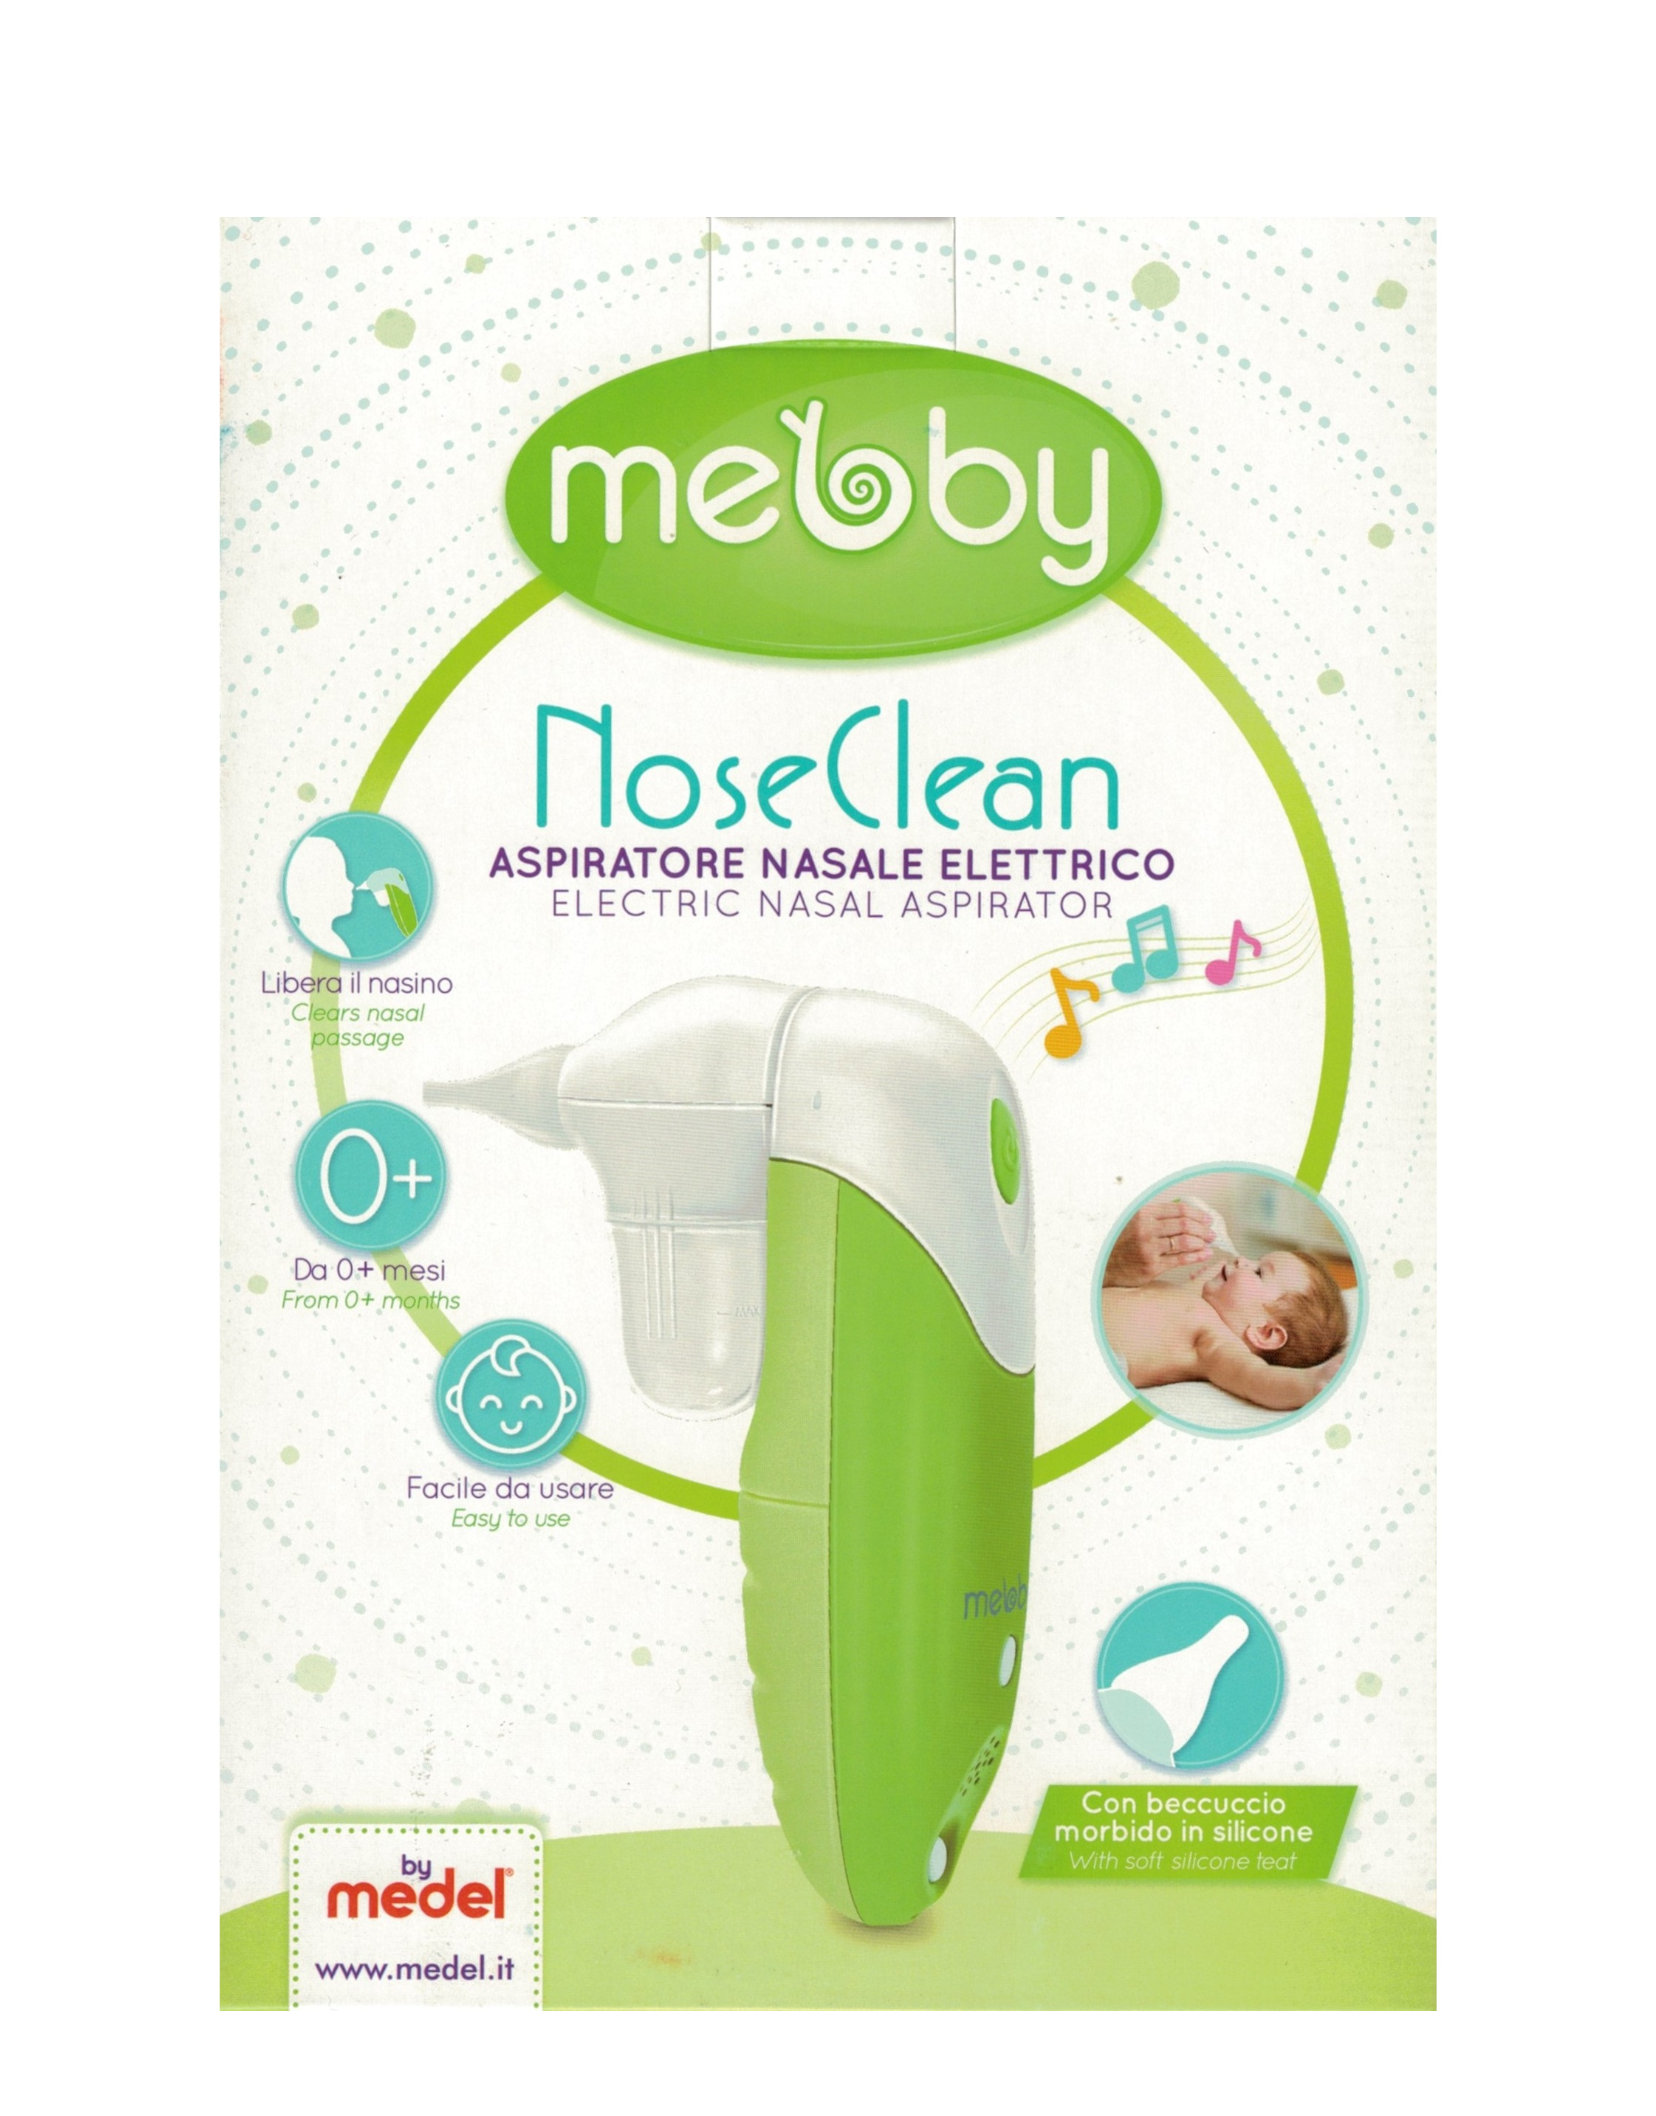 Mebby - Nose Clean Aspiratore Nasale Elettrico di Medel 